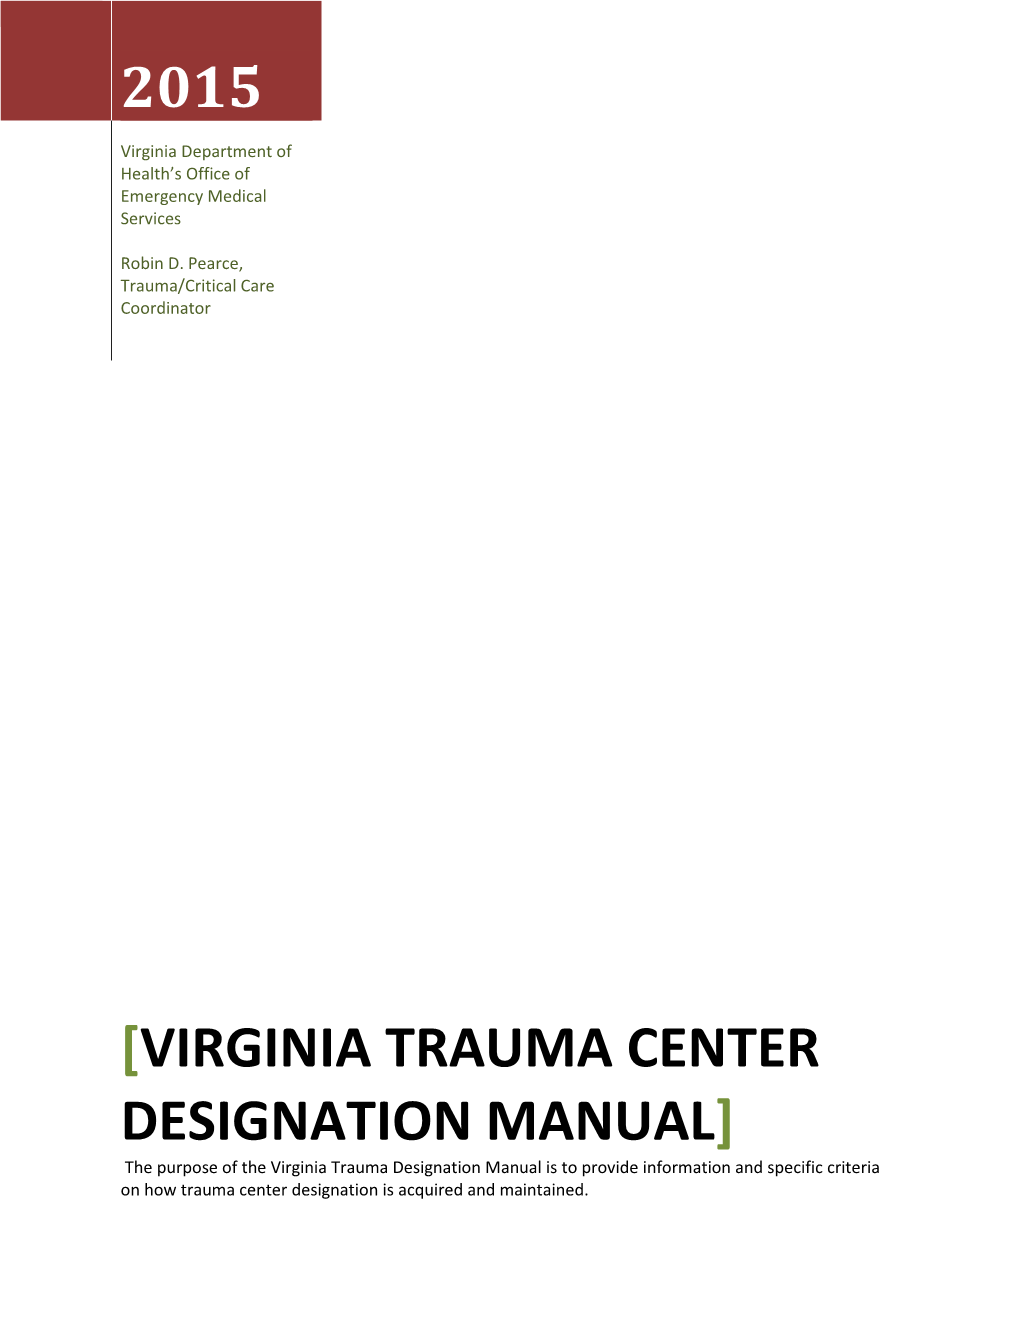 Virginia Trauma Center Designation Manual